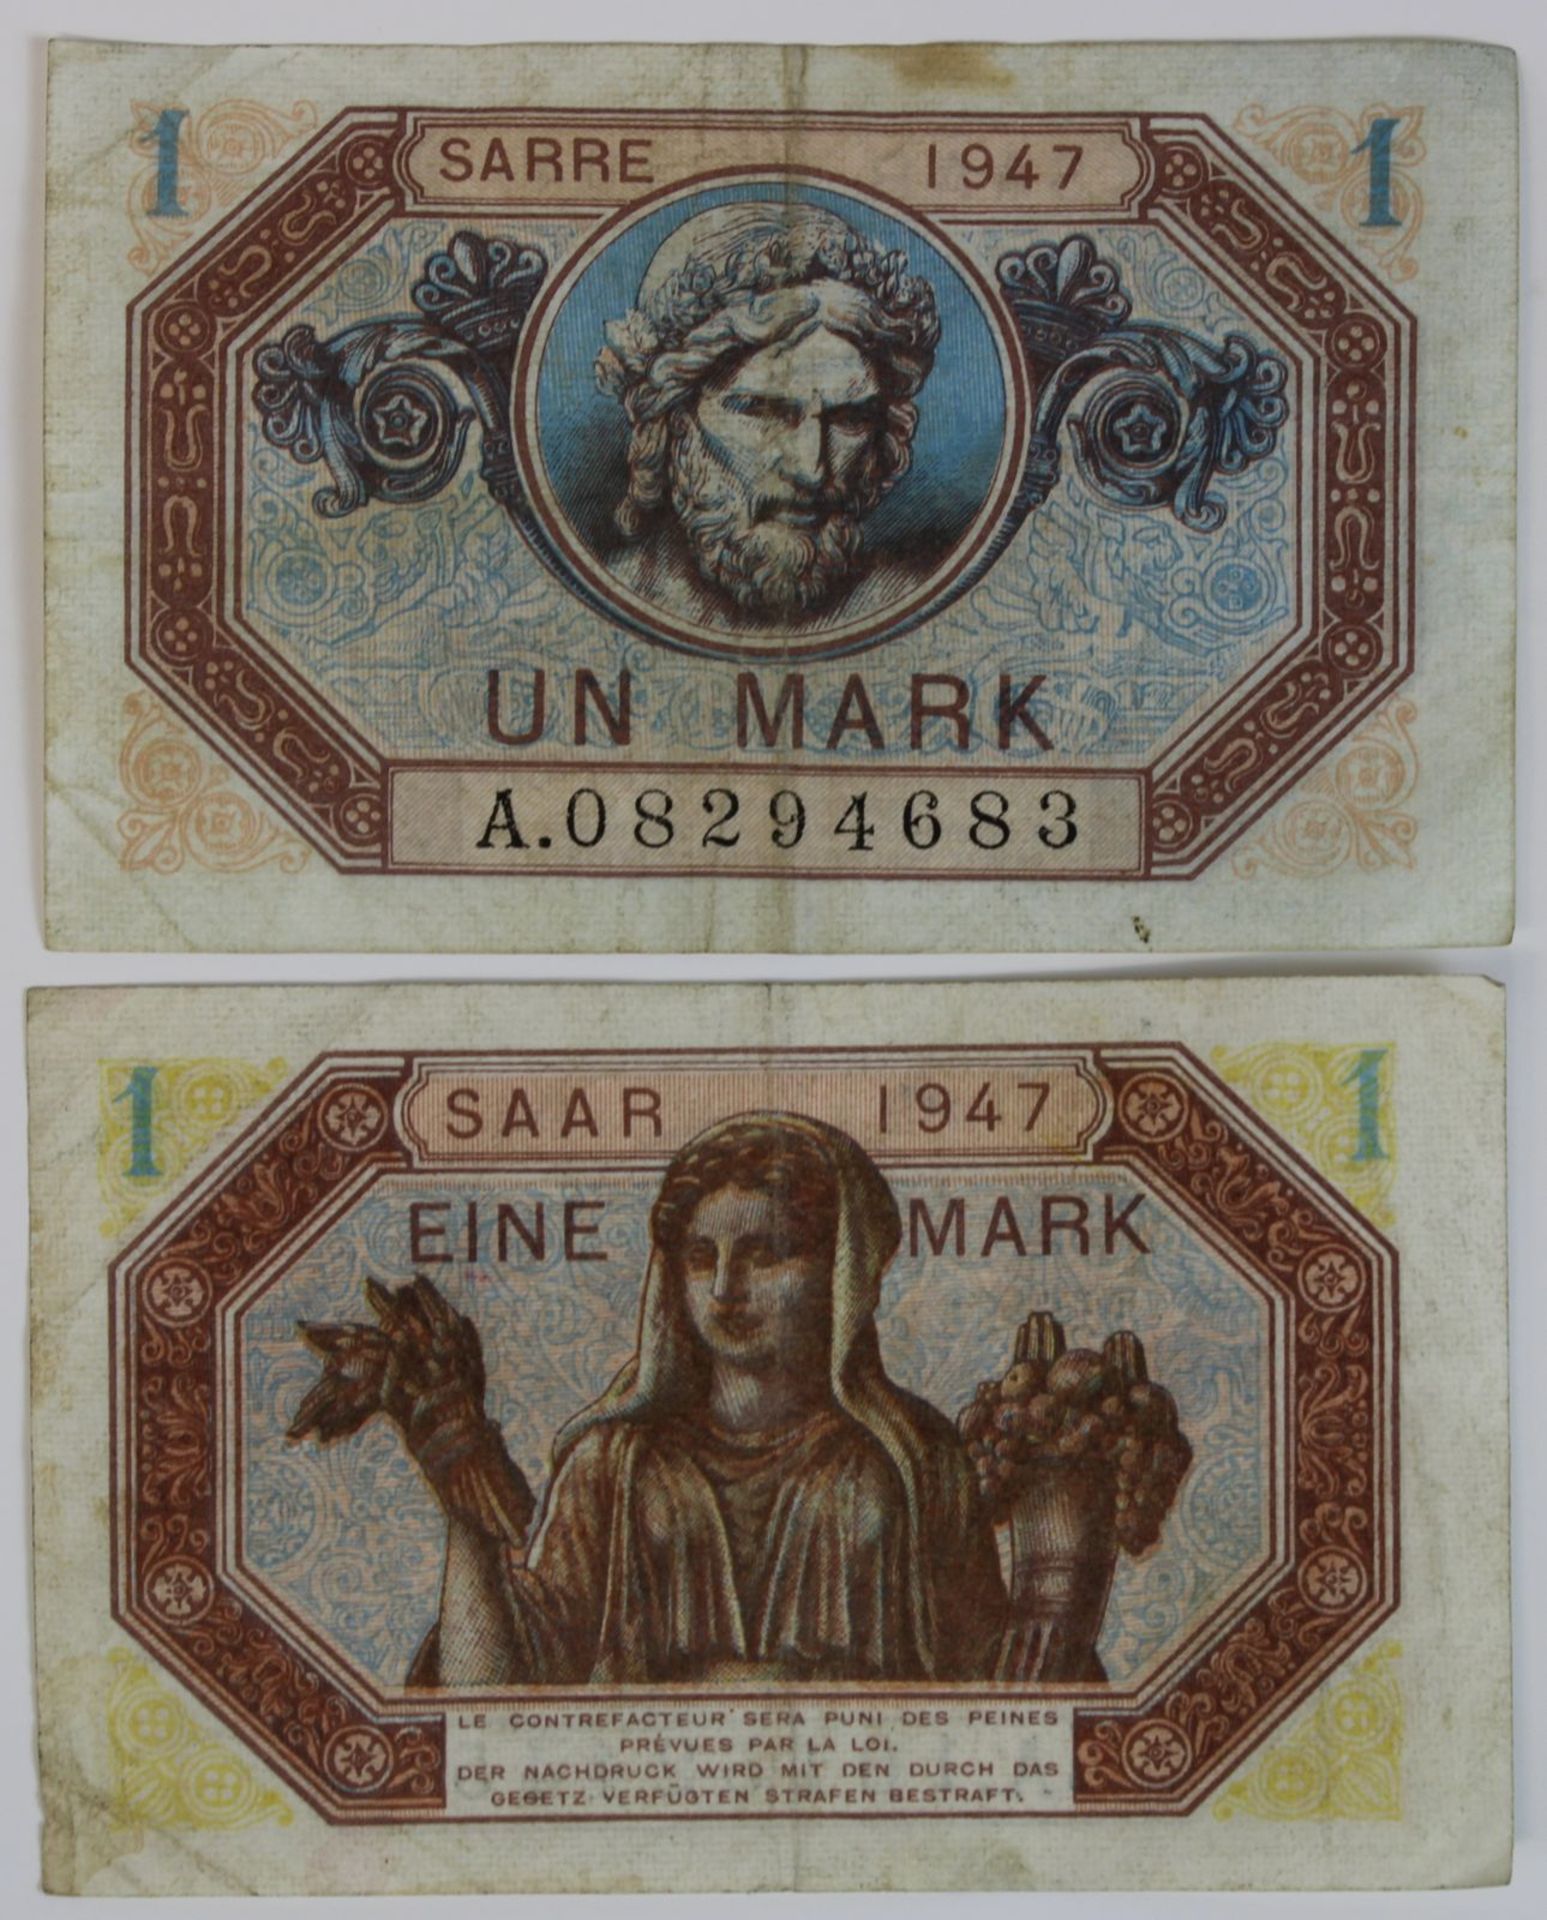 Zwei Banknoten zu einer Mark, Saar 1947, Vorderseite mit französischer Beschriftung, Rückseite mit - Bild 2 aus 2